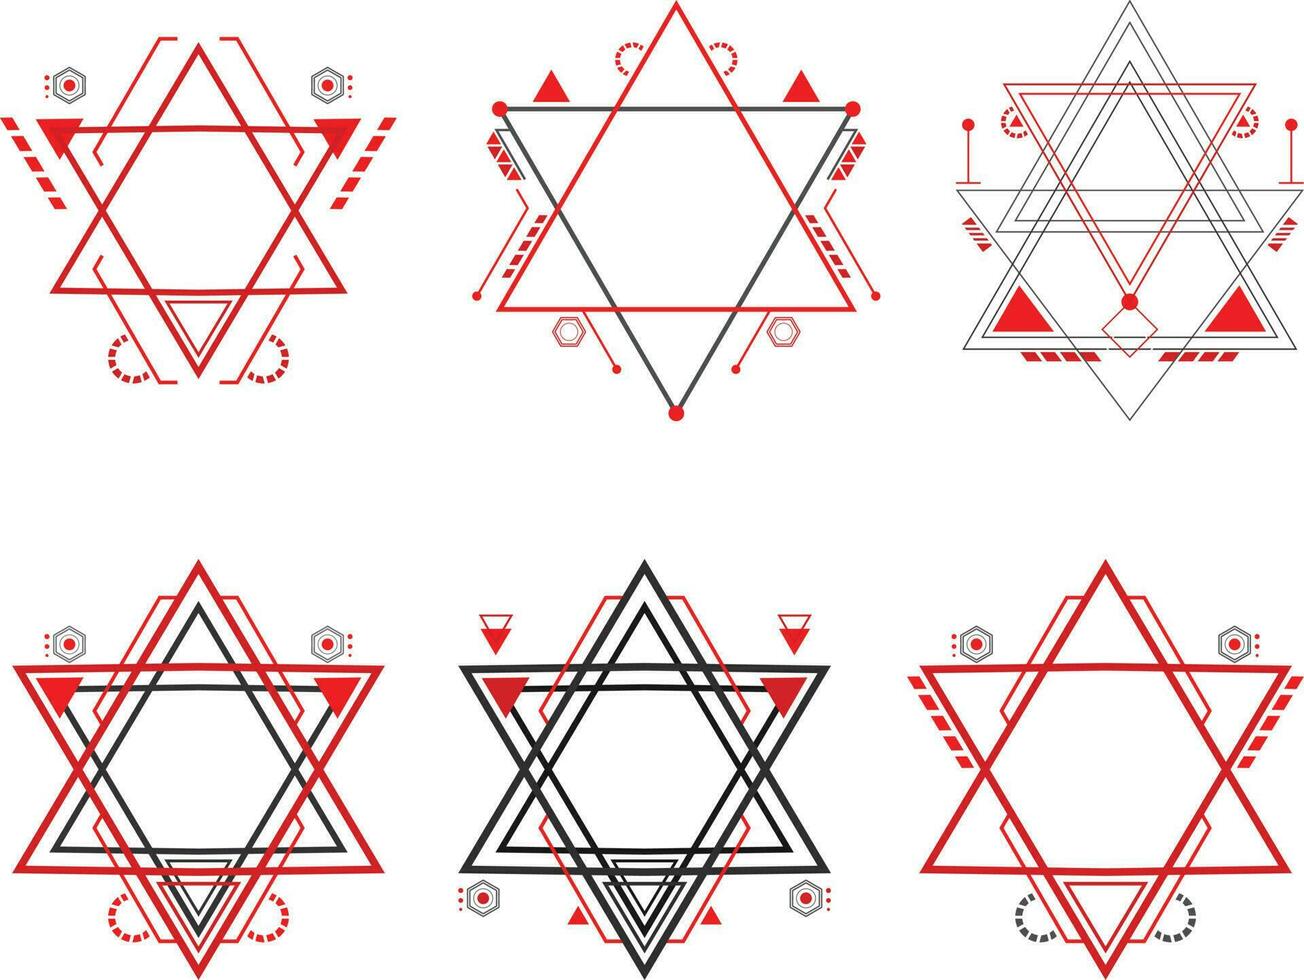 uppsättning av helig geometri symboler på vit bakgrund. vektor illustration.